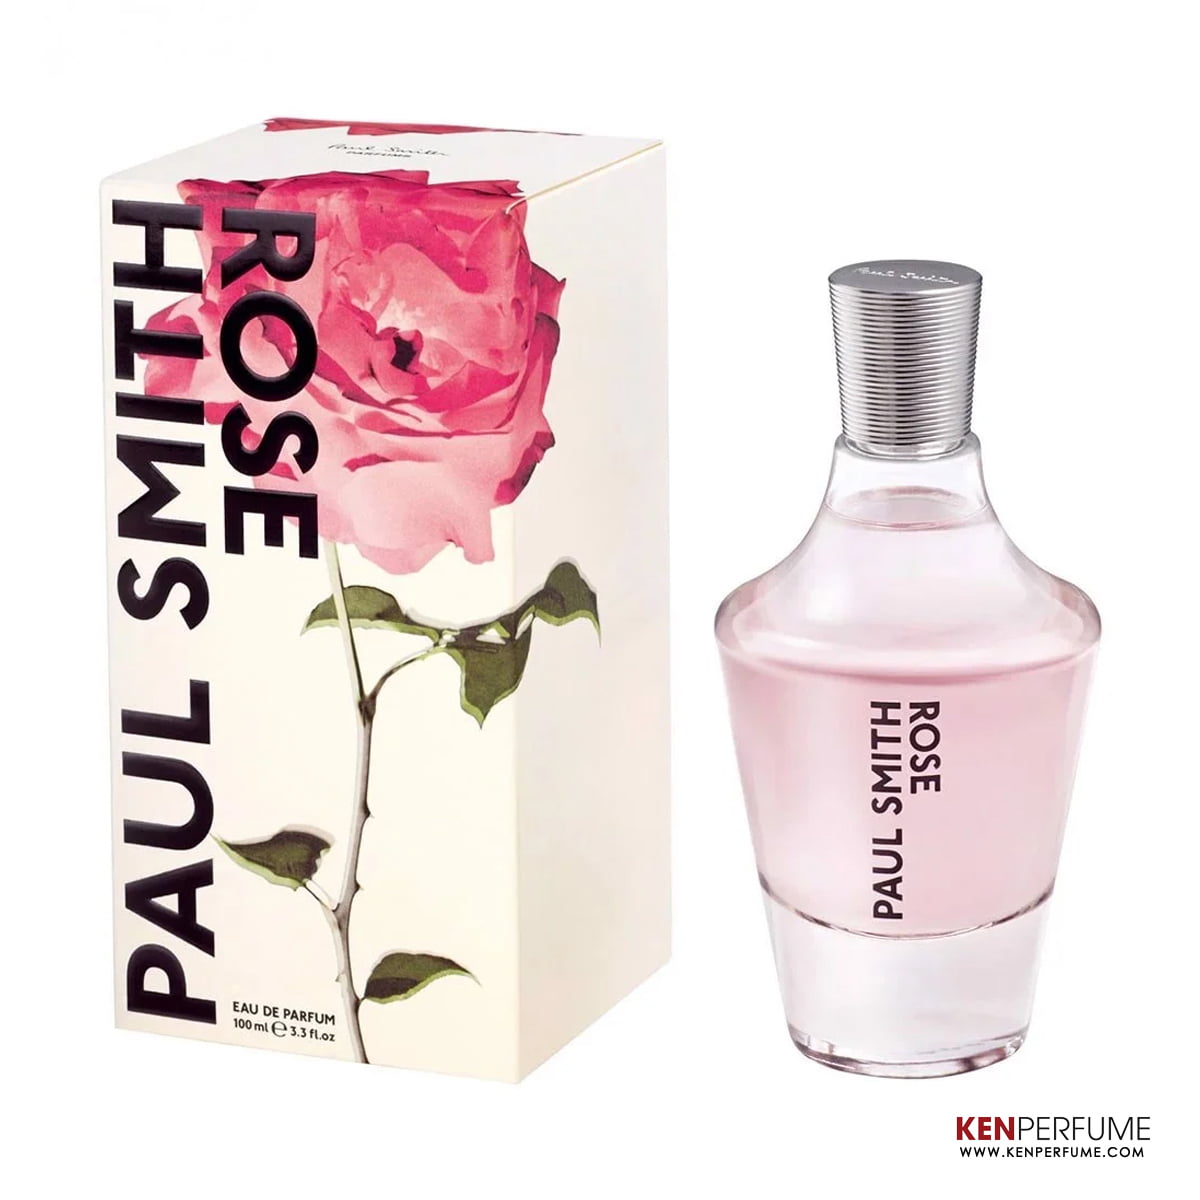 Nước hoa Paul Smith Rose: Hương thơm quyến rũ từ hoa hồng tươi - Genz.vn (1)